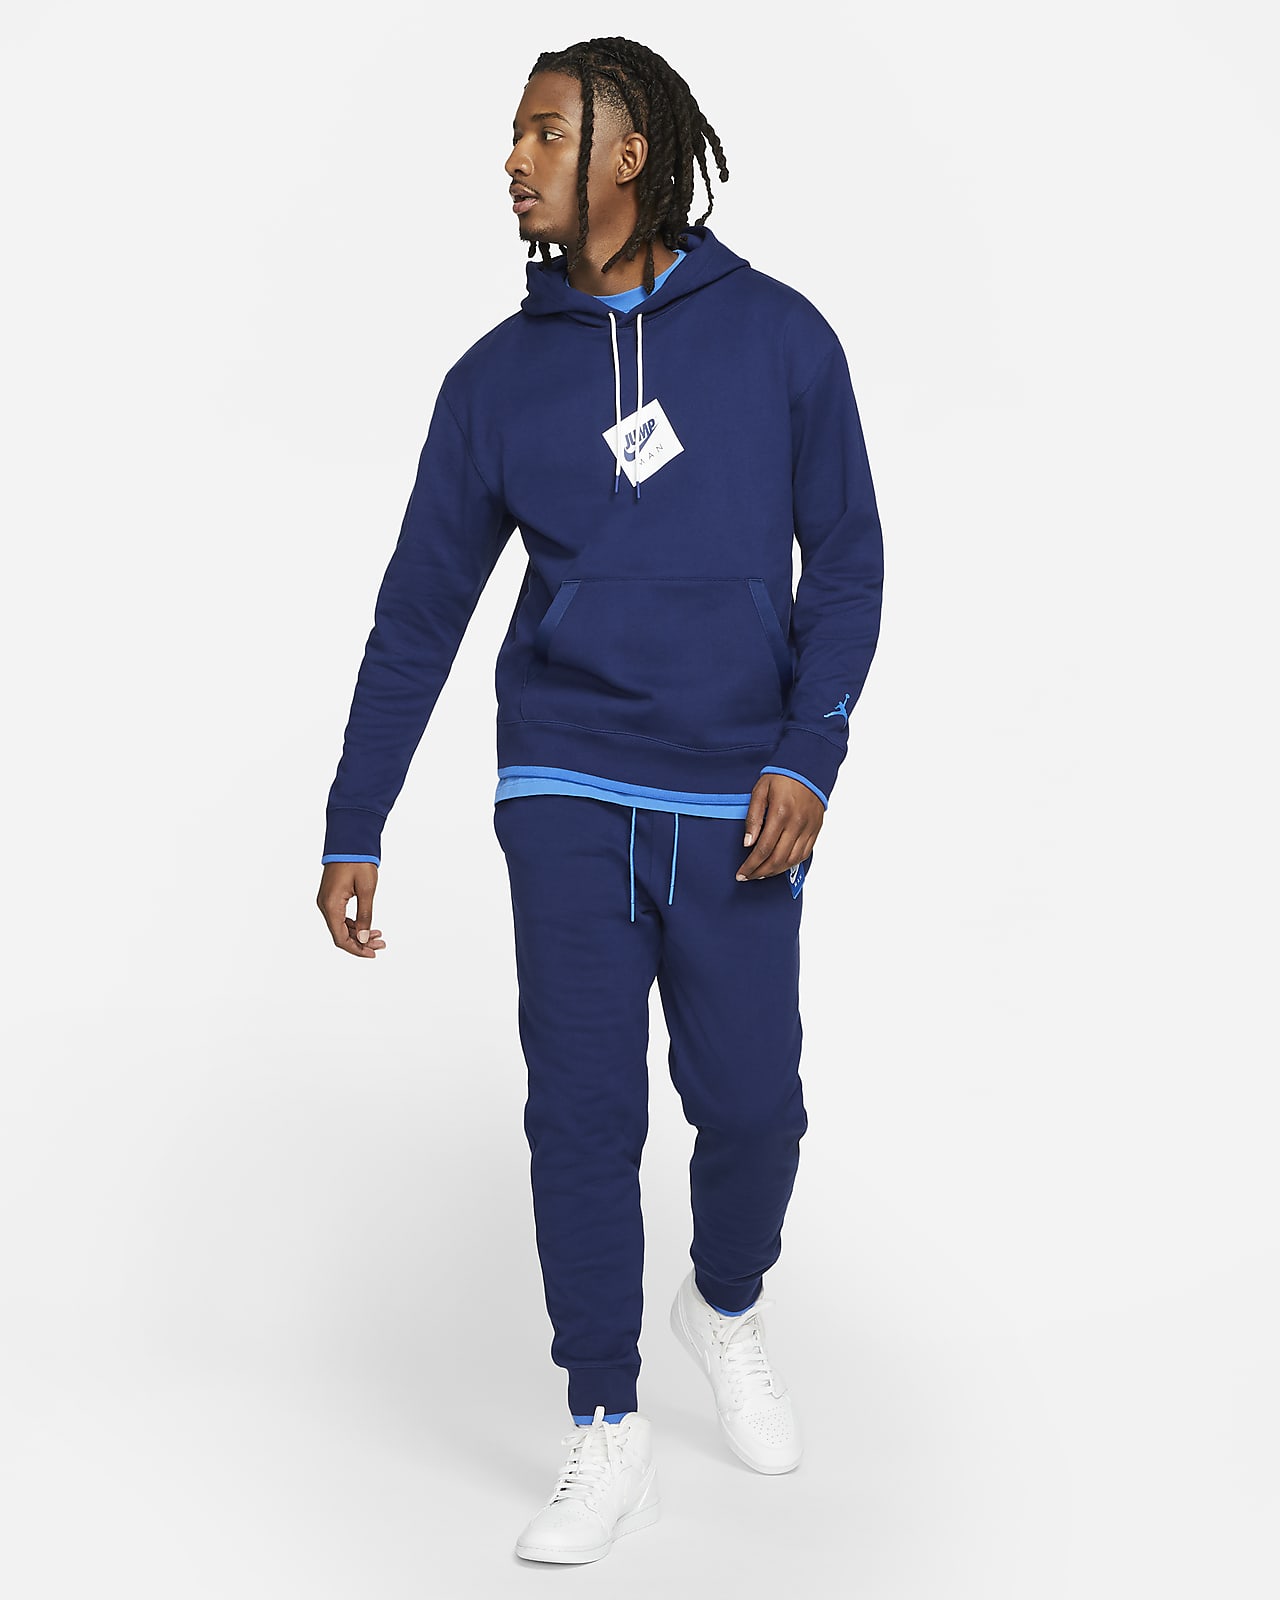 Printed Fleece Pullover Hoodie. Nike LU